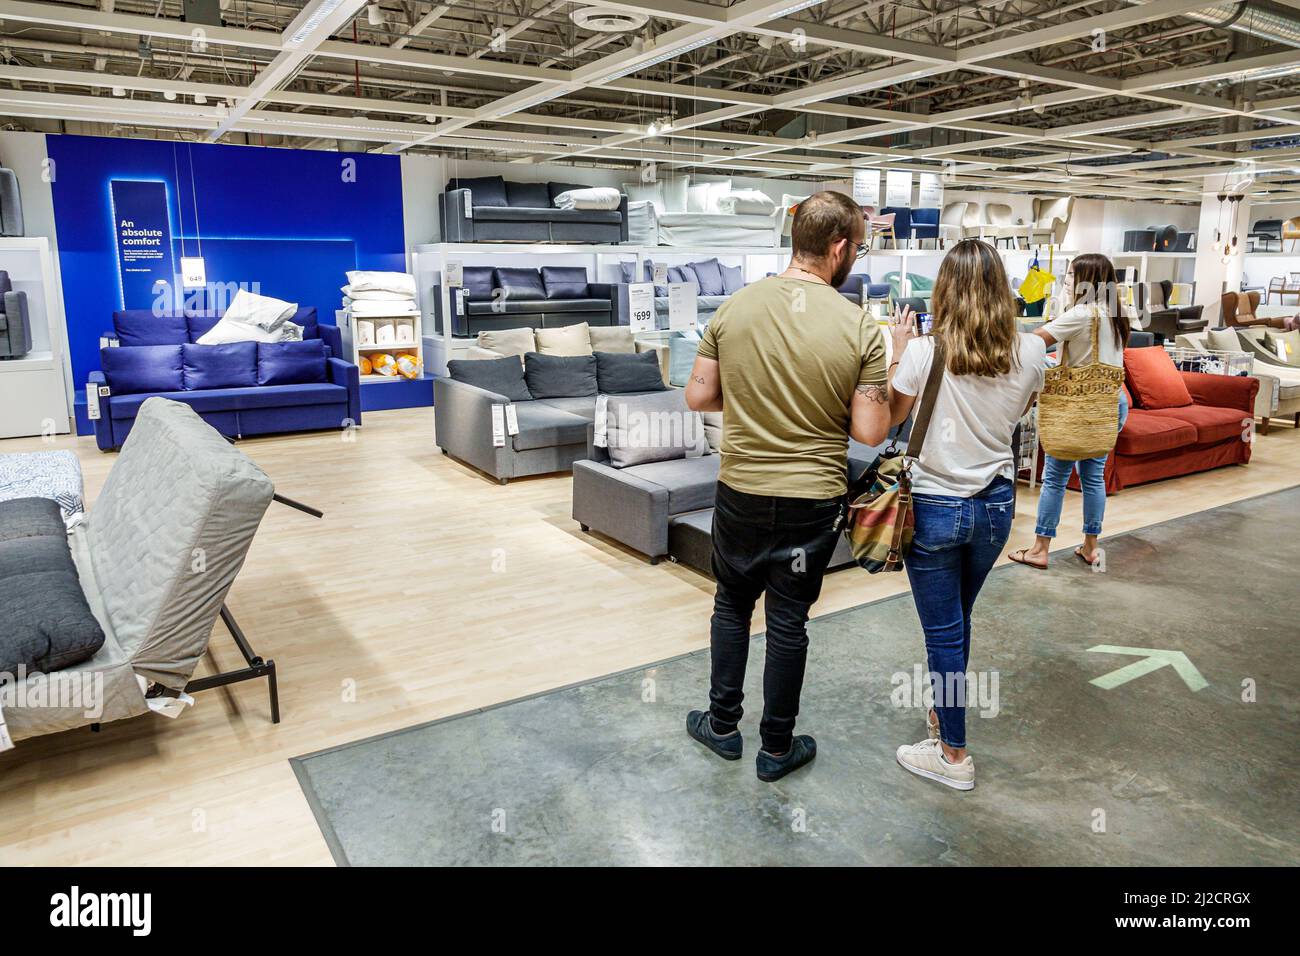 Miami Florida IKEA maison biens meubles accessoires meubles décor shopping acheteurs à l'intérieur affichage vente couple homme femme recherche Banque D'Images